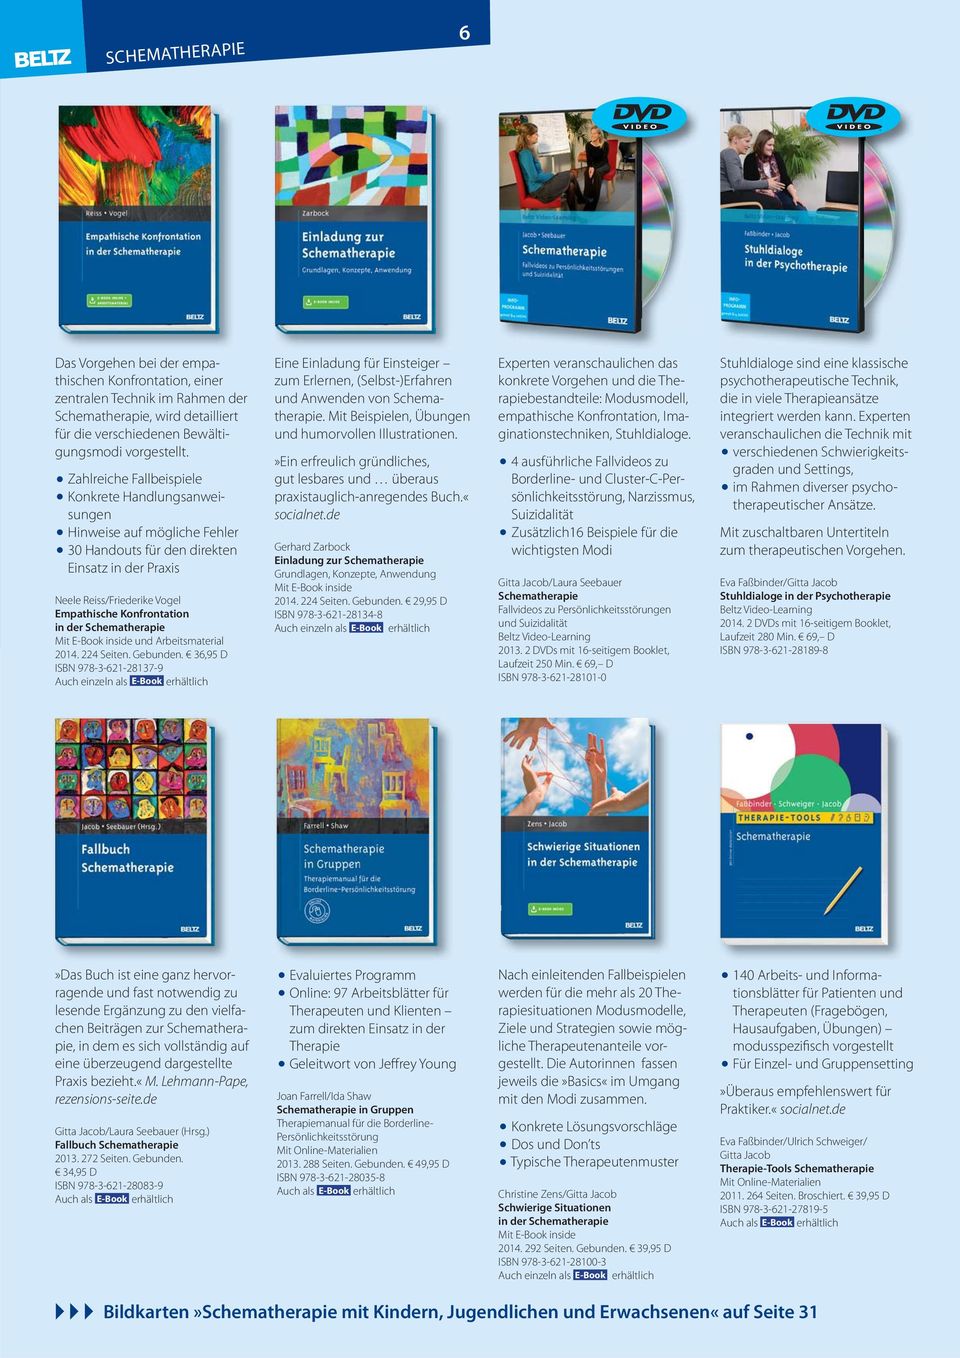 Schematherapie 2014. 224 Seiten. Gebunden. 36,95 D ISBN 978-3-621-28137-9 Eine Einladung für Einsteiger zum Erlernen, (Selbst-)Erfahren und Anwenden von Schematherapie.